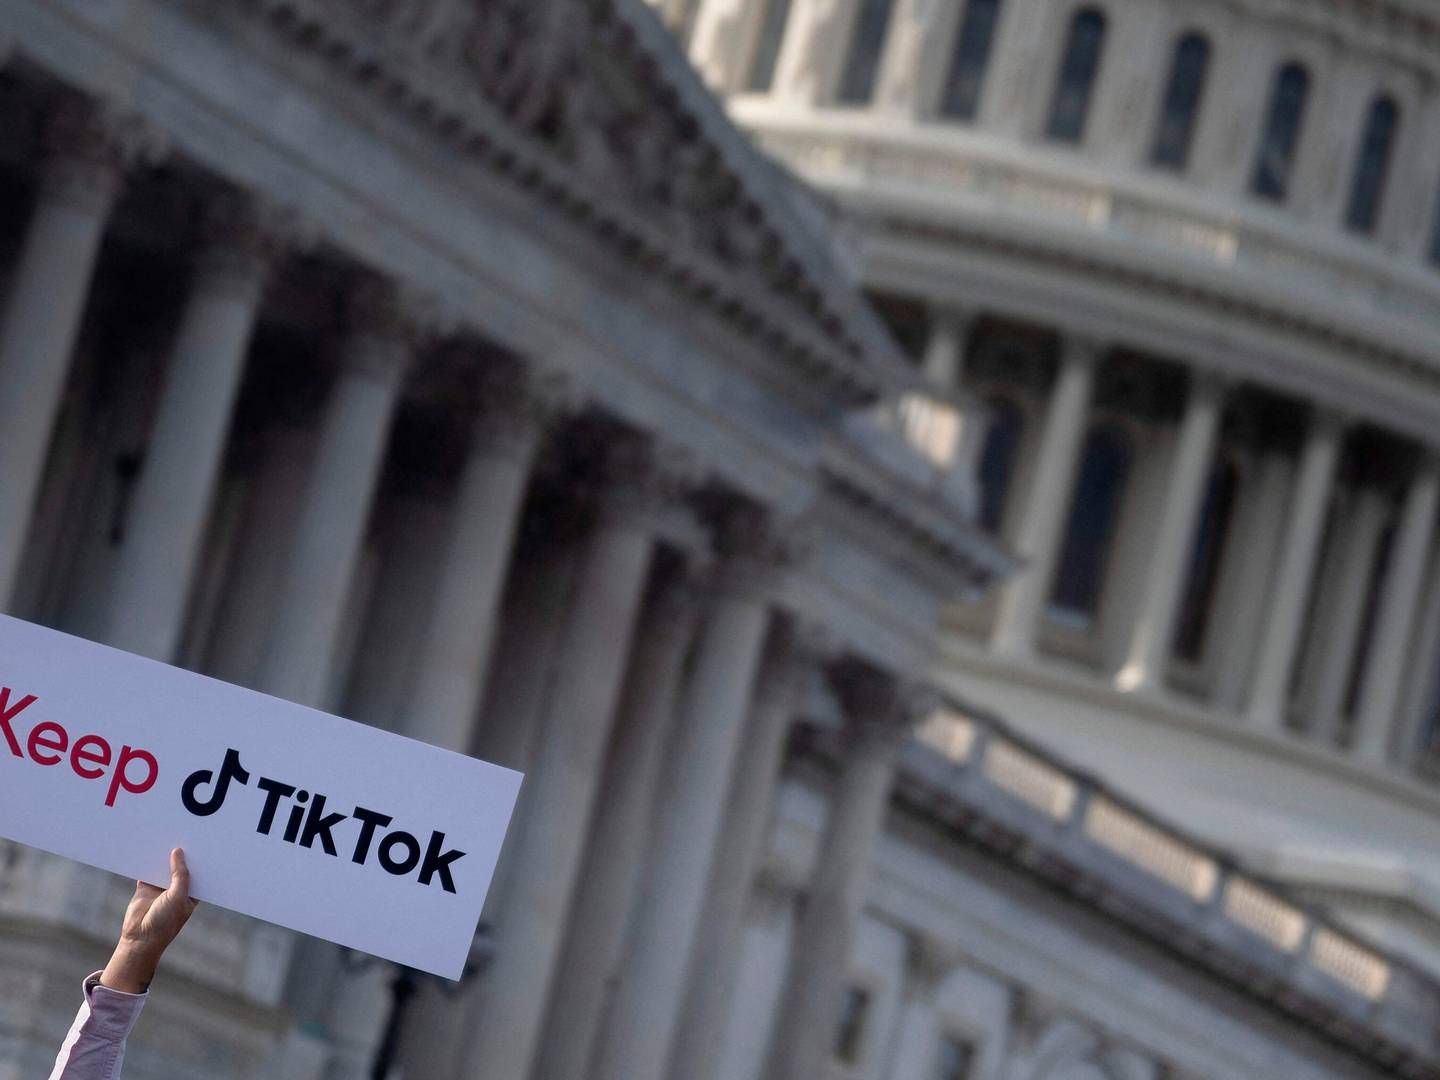 En gruppe brugere og enkelte politikere var mødt op til en demonstration og pressekonference foran Capitol Hill i Washington D.C. | Foto: Brendan Smialowski/AFP/Ritzau Scanpix